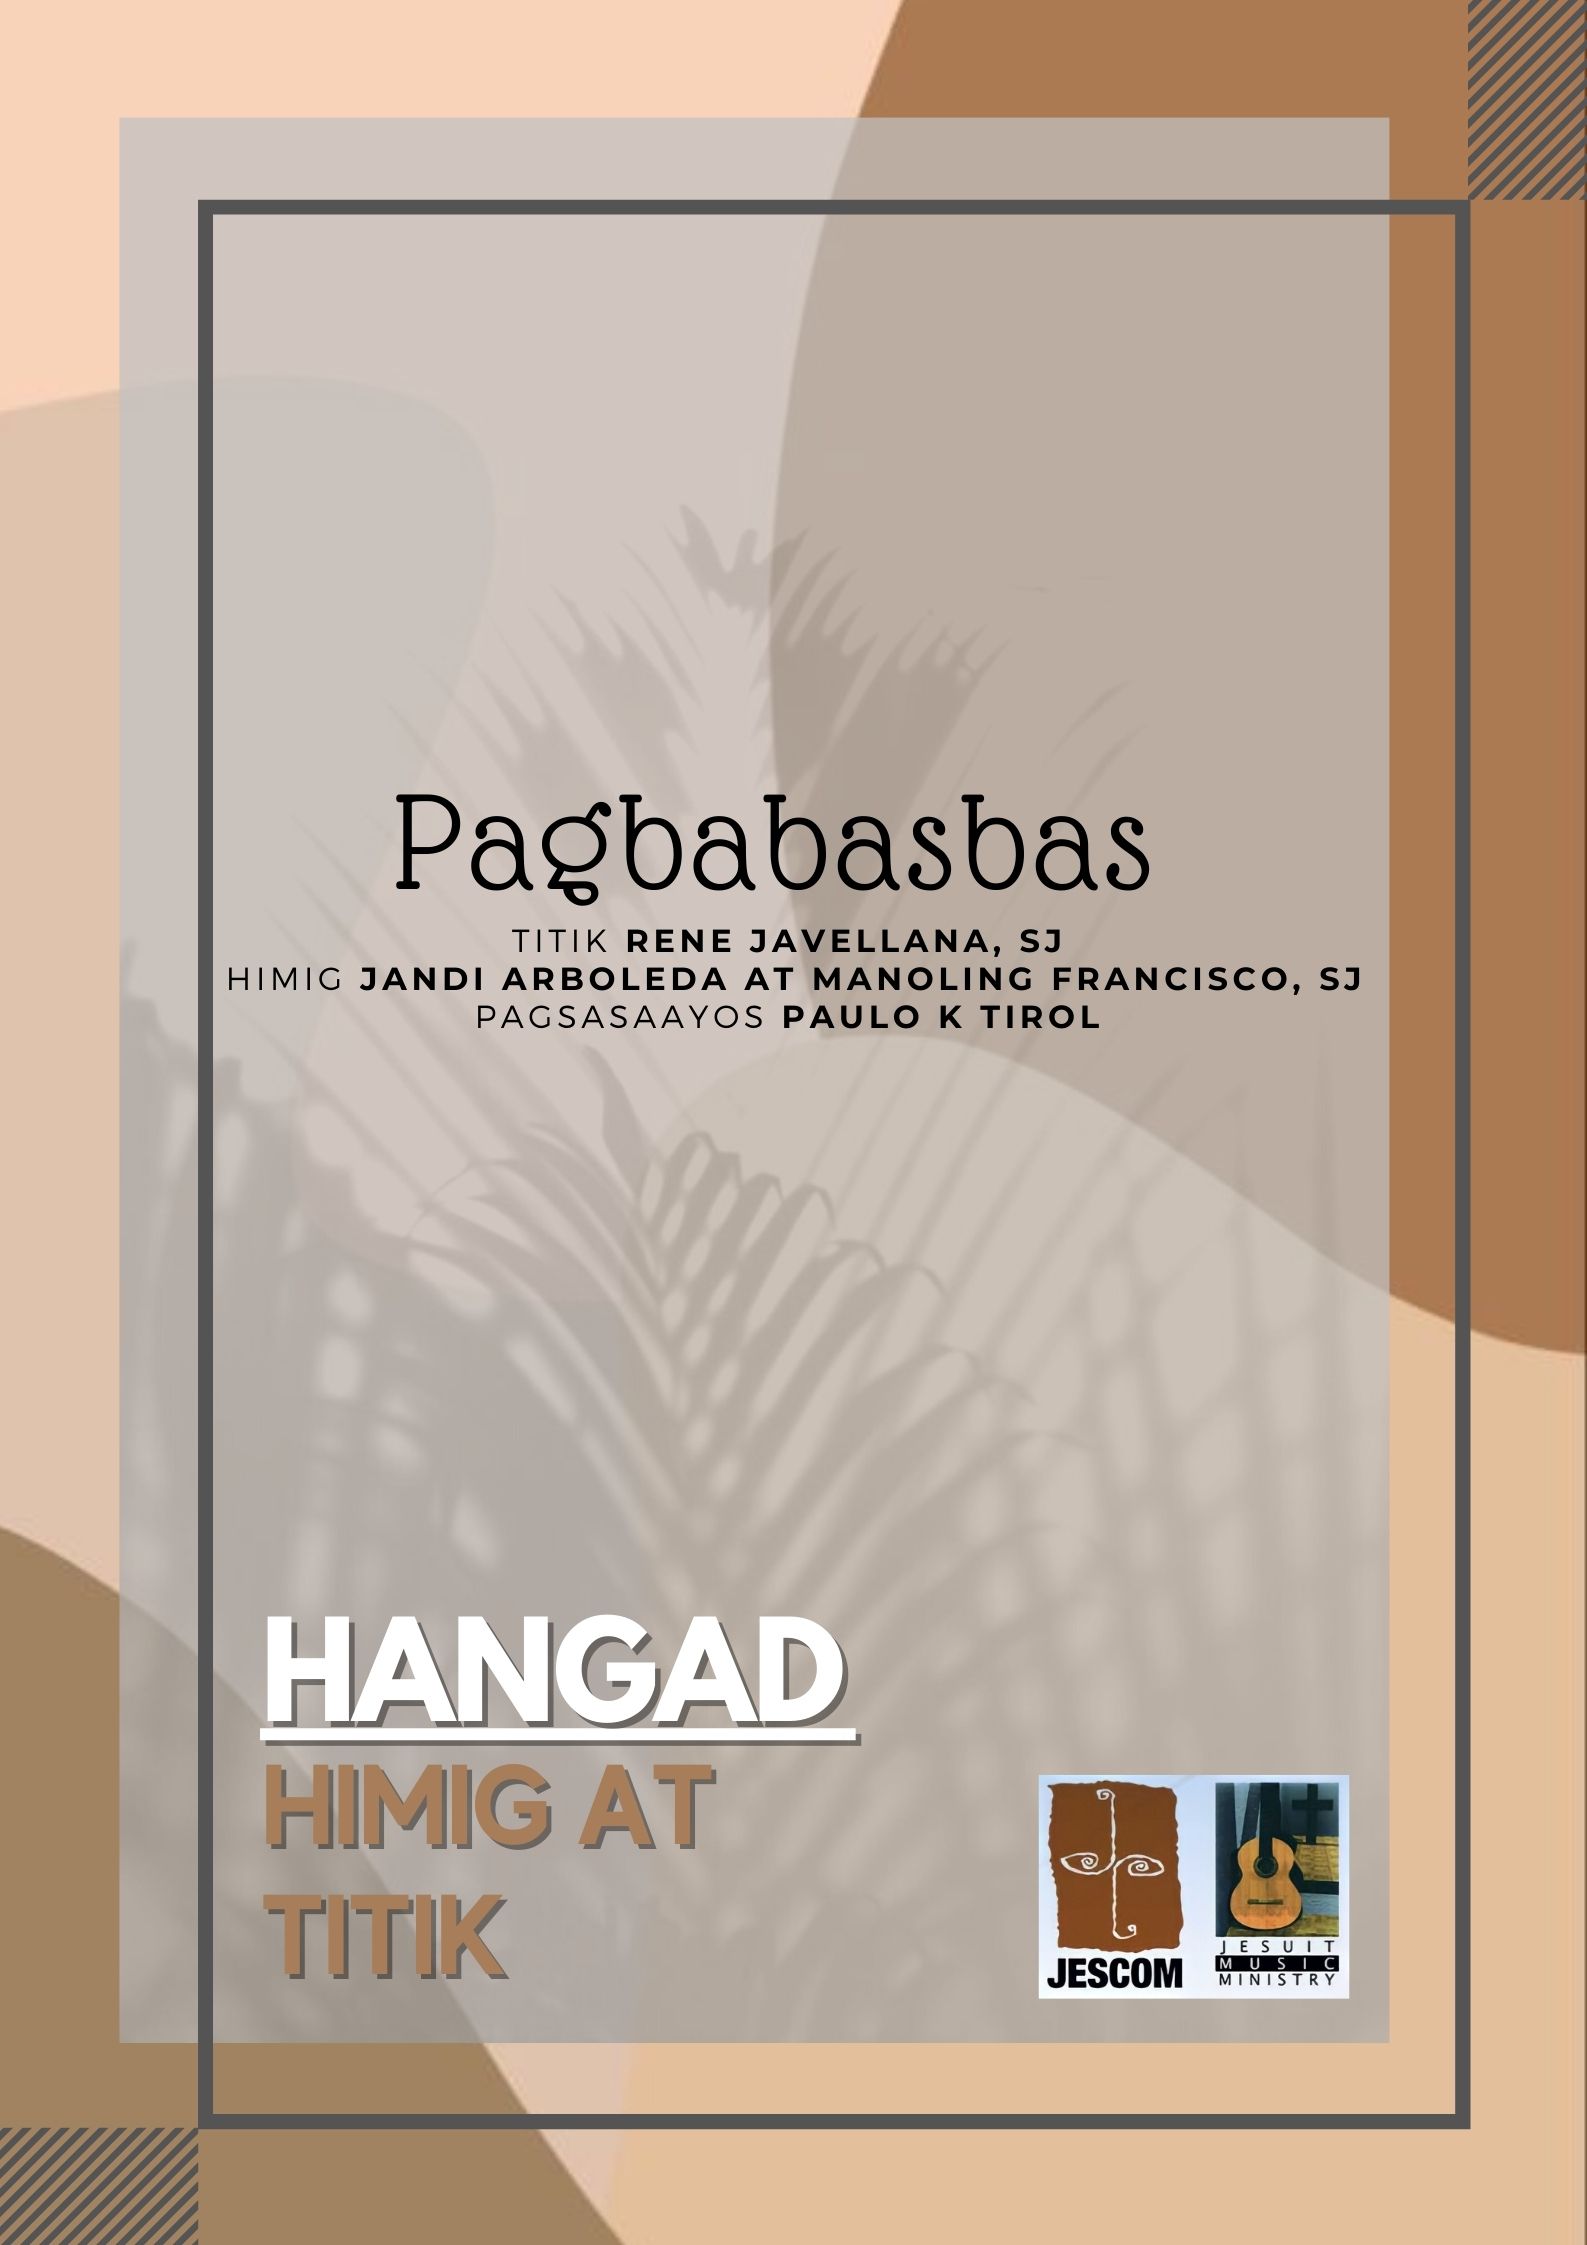 Pagbabasbas — Music Sheet